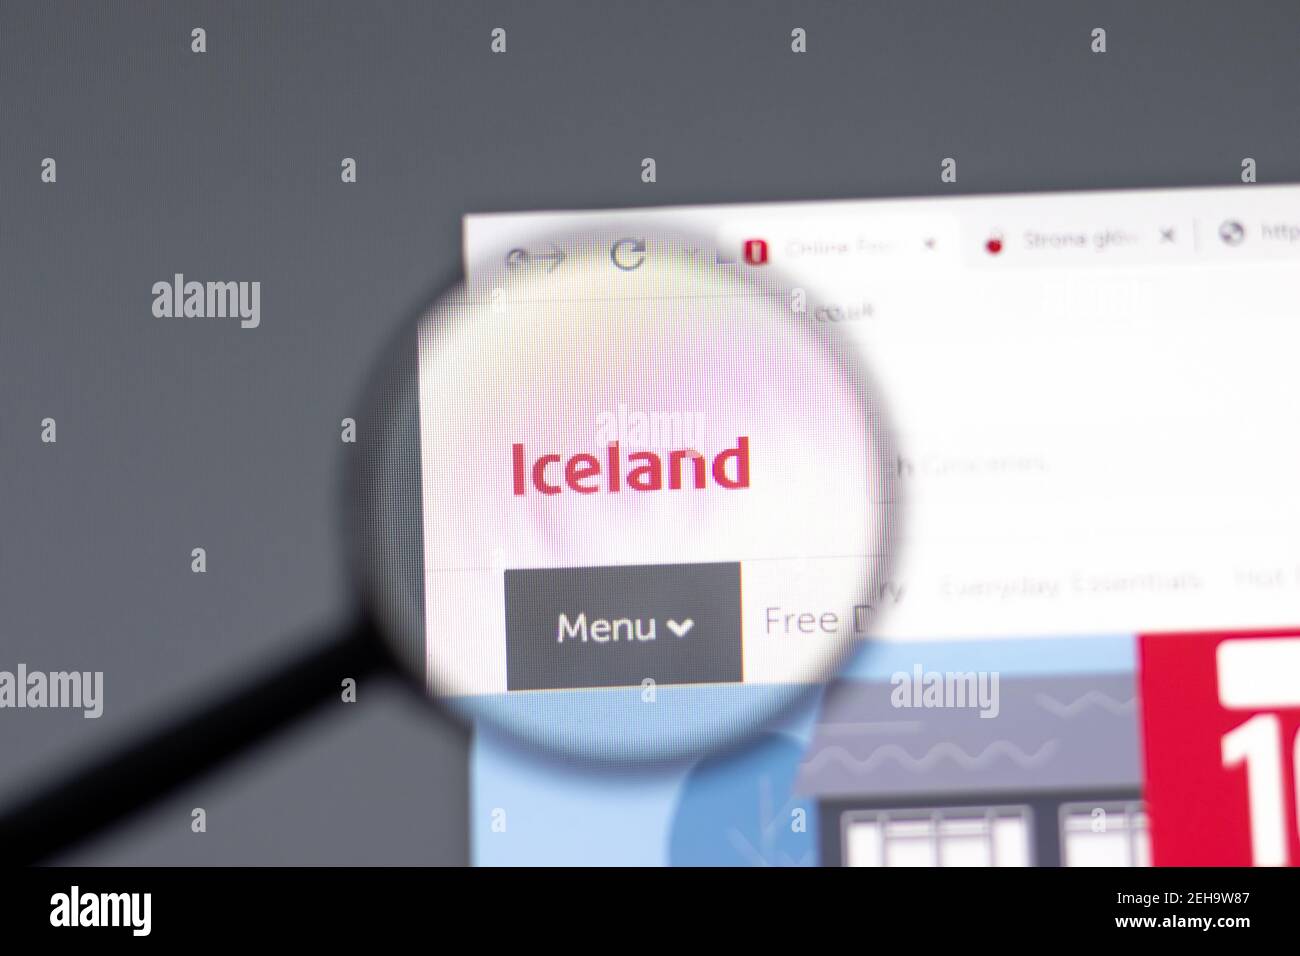 Nueva York, EE.UU. - 15 de febrero de 2021: Sitio web de Islandia en el navegador con el logotipo de la empresa, editorial ilustrativa Foto de stock